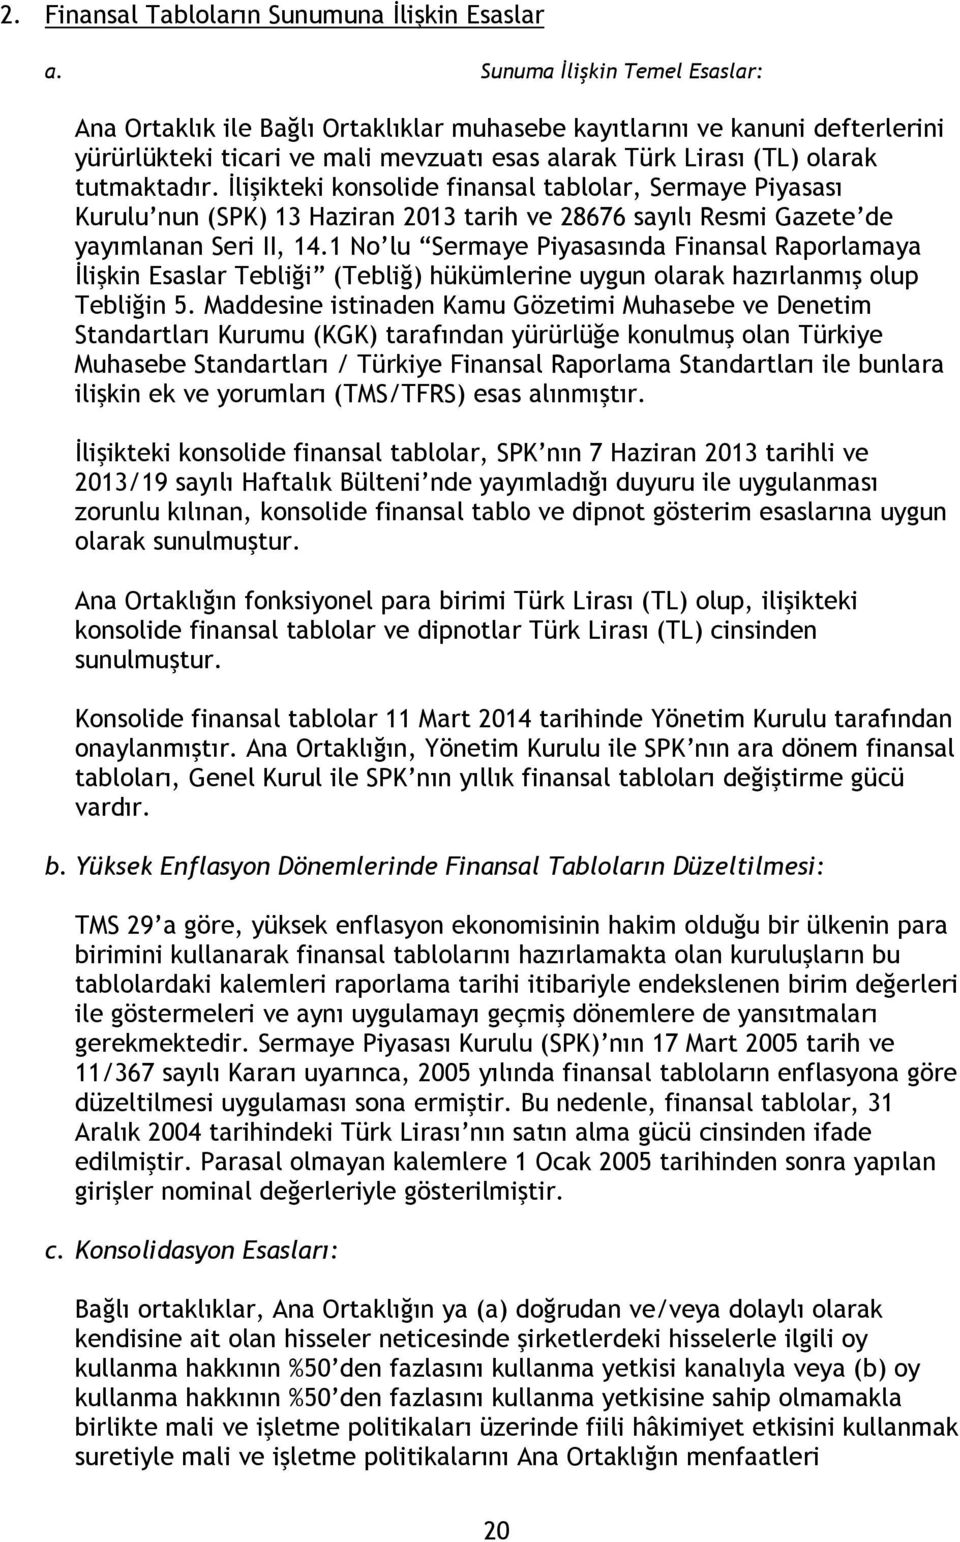 İlişikteki konsolide finansal tablolar, Sermaye Piyasası Kurulu nun (SPK) 13 Haziran 2013 tarih ve 28676 sayılı Resmi Gazete de yayımlanan Seri II, 14.